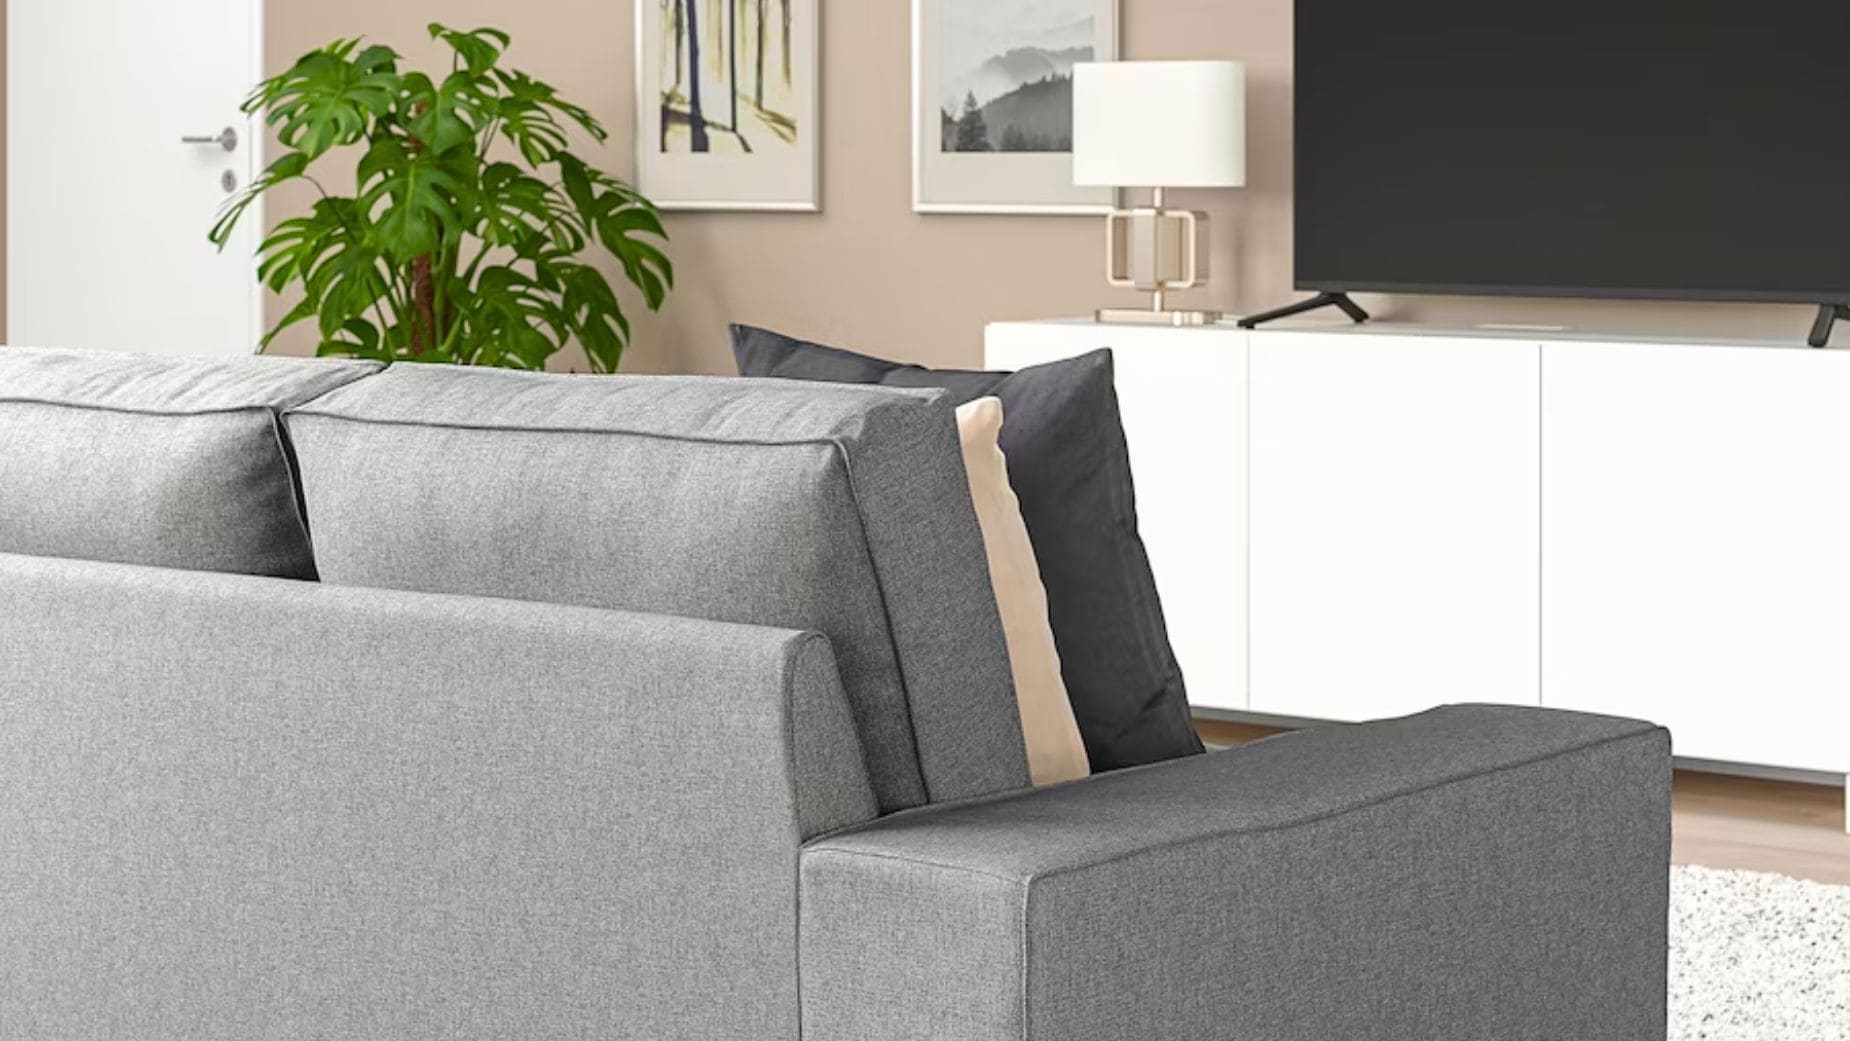 Combinar muebles de Ikea y detalles de diseño